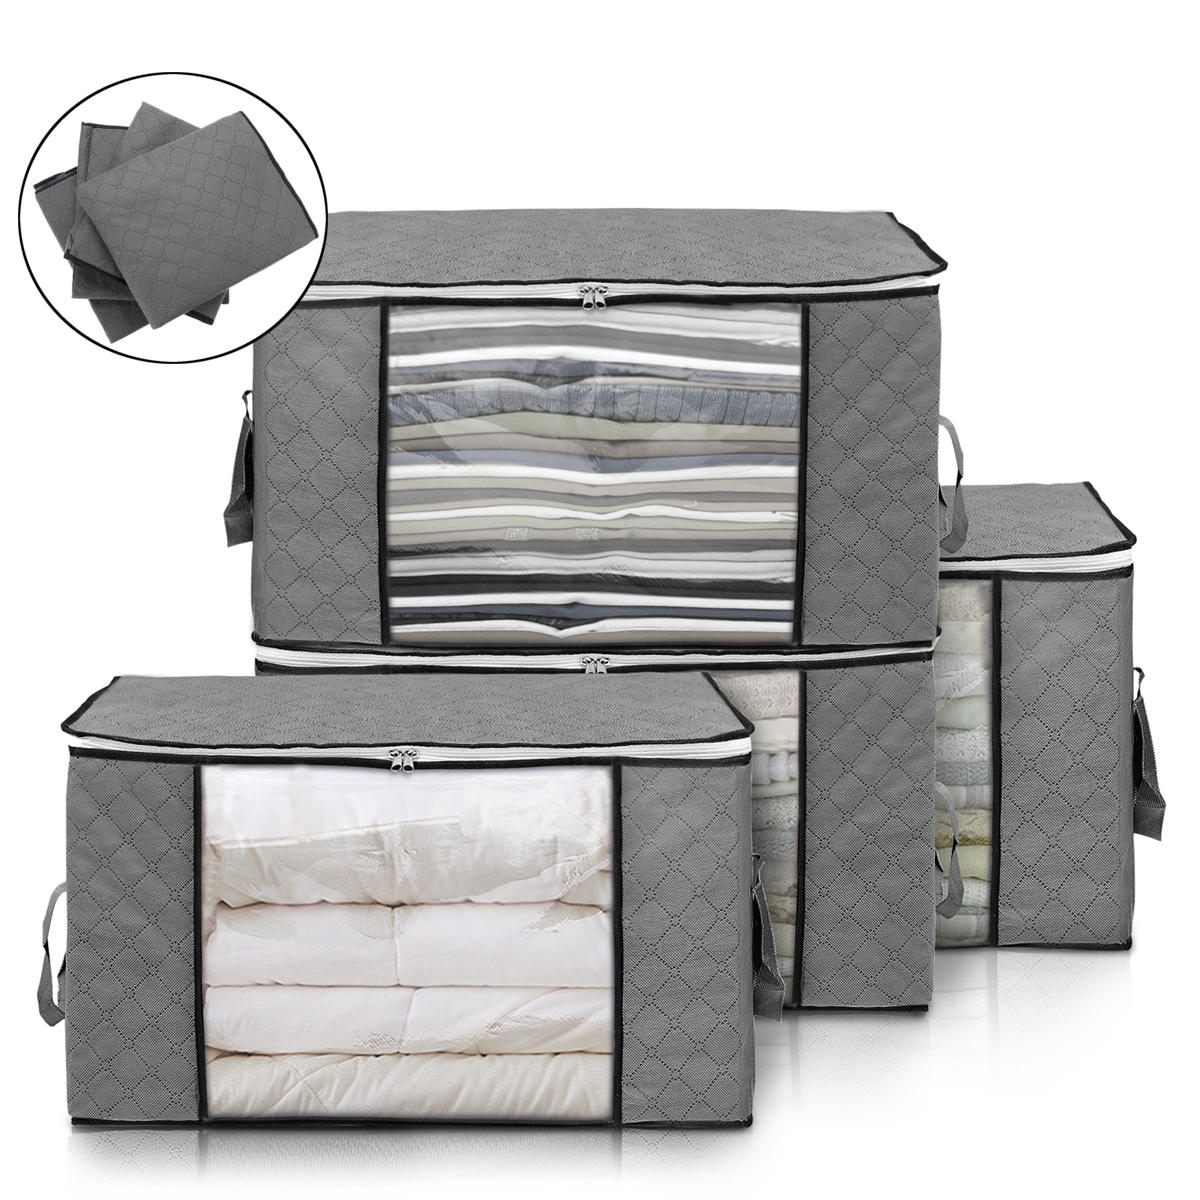 Large Foldable Storage Bag Clothes Bedding Blanket Organizer Holder Case Handle 